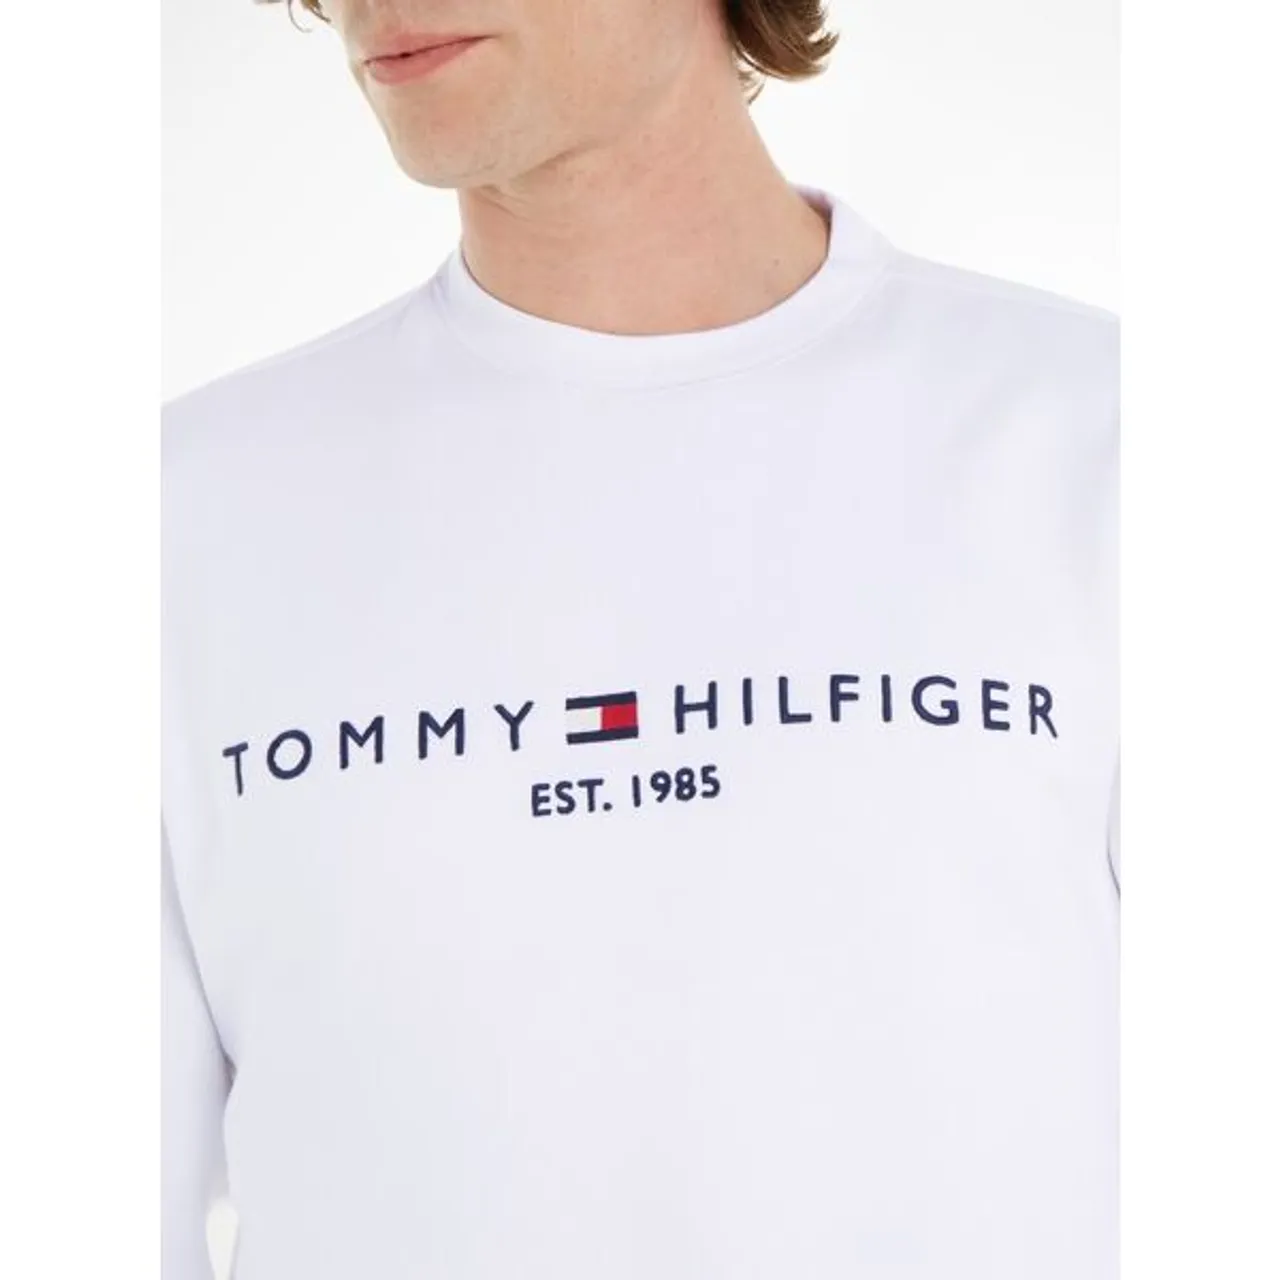 Sweatshirt TOMMY HILFIGER "TOMMY LOGO SWEATSHIRT" Gr. XXXL (58), weiß (white) Herren Sweatshirts